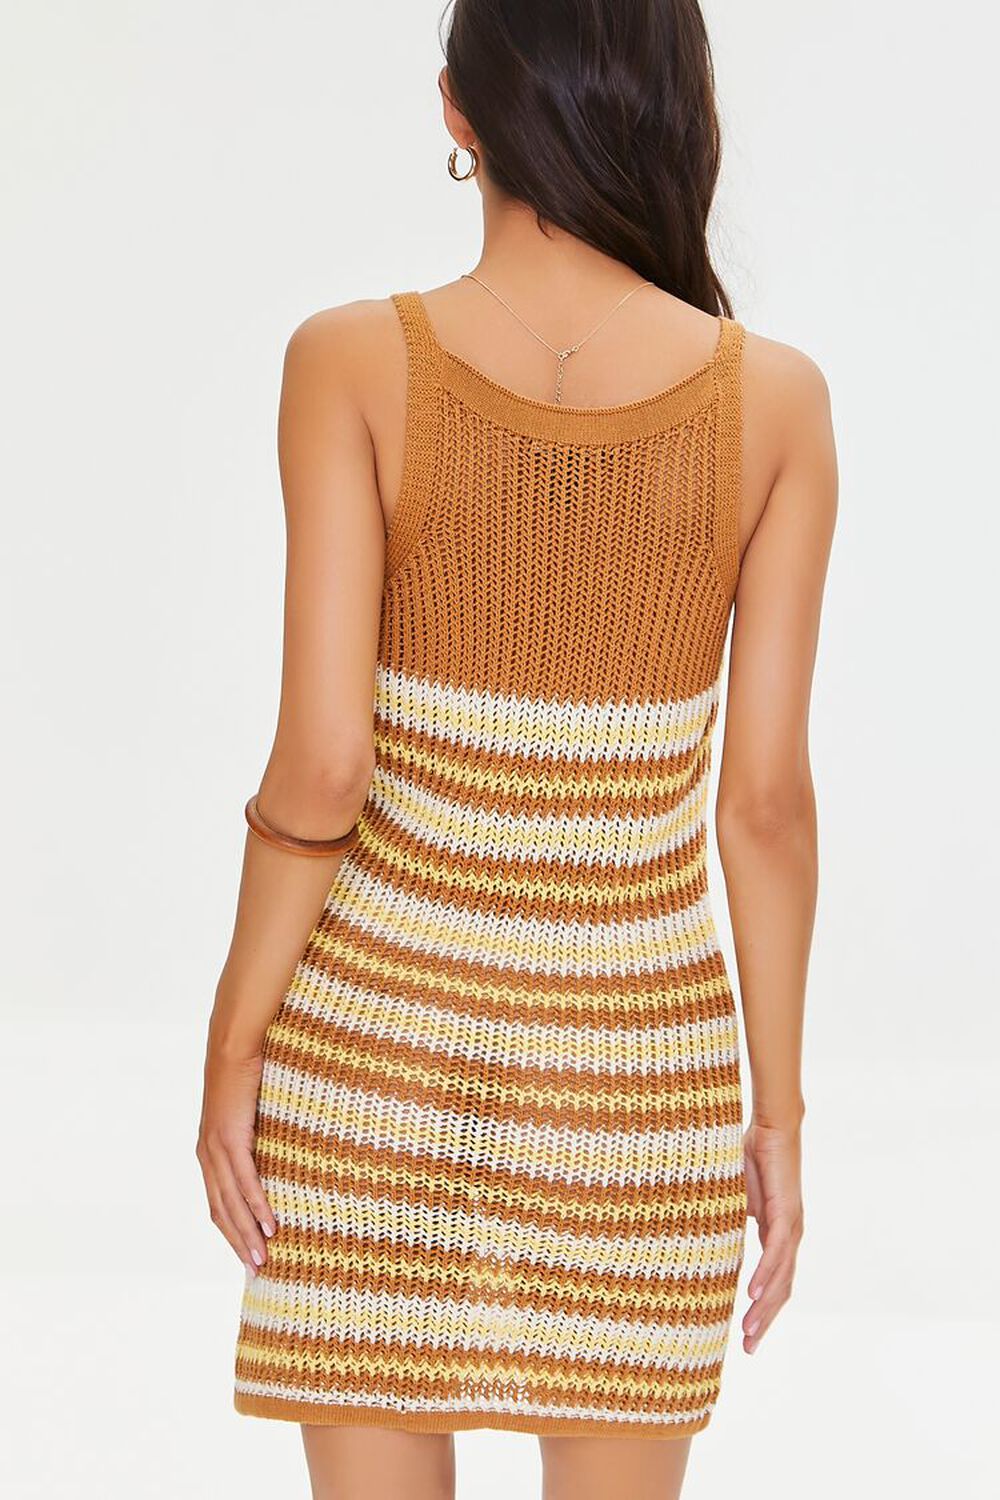 Striped Crochet Dress